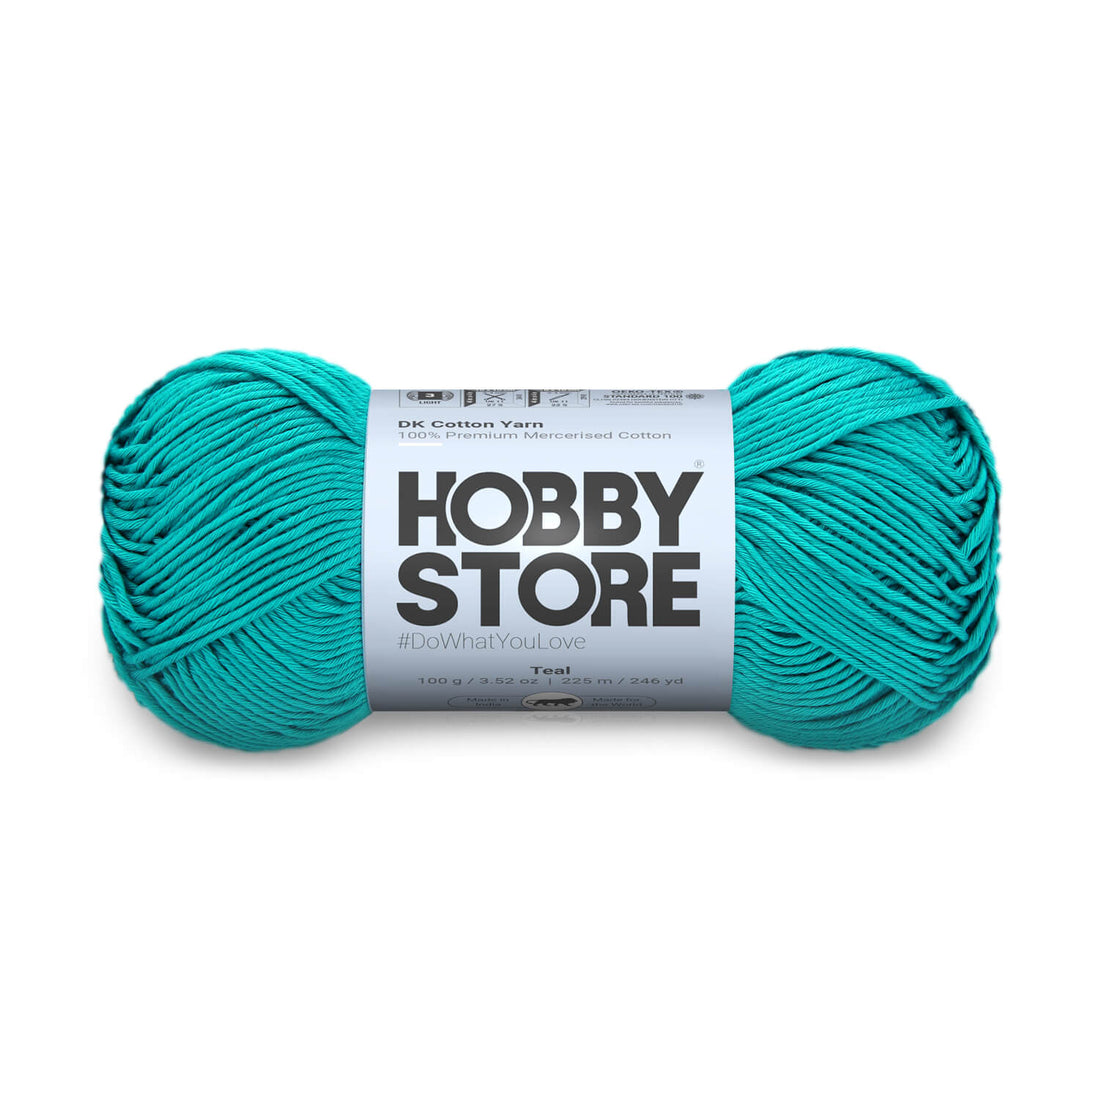 DK Mercerised Cotton Yarn by Hobby Store - Teal - 347